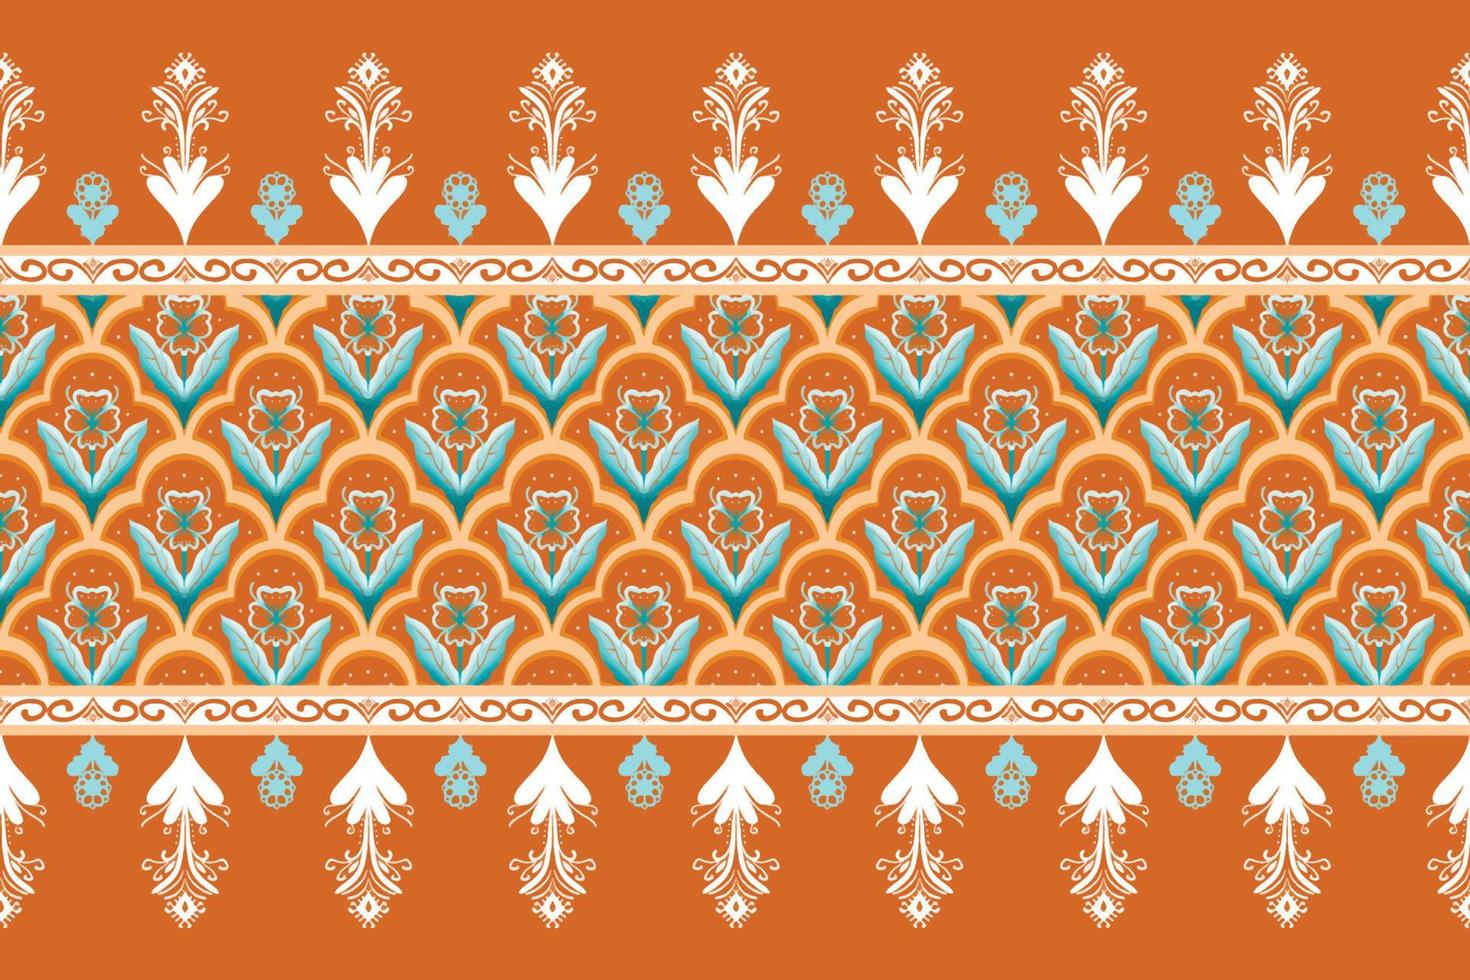 flor azul sobre patrón oriental étnico geométrico marrón anaranjado diseño tradicional para fondo, alfombra, papel pintado, ropa, envoltura, batik, tela, estilo de bordado de ilustración vectorial vector